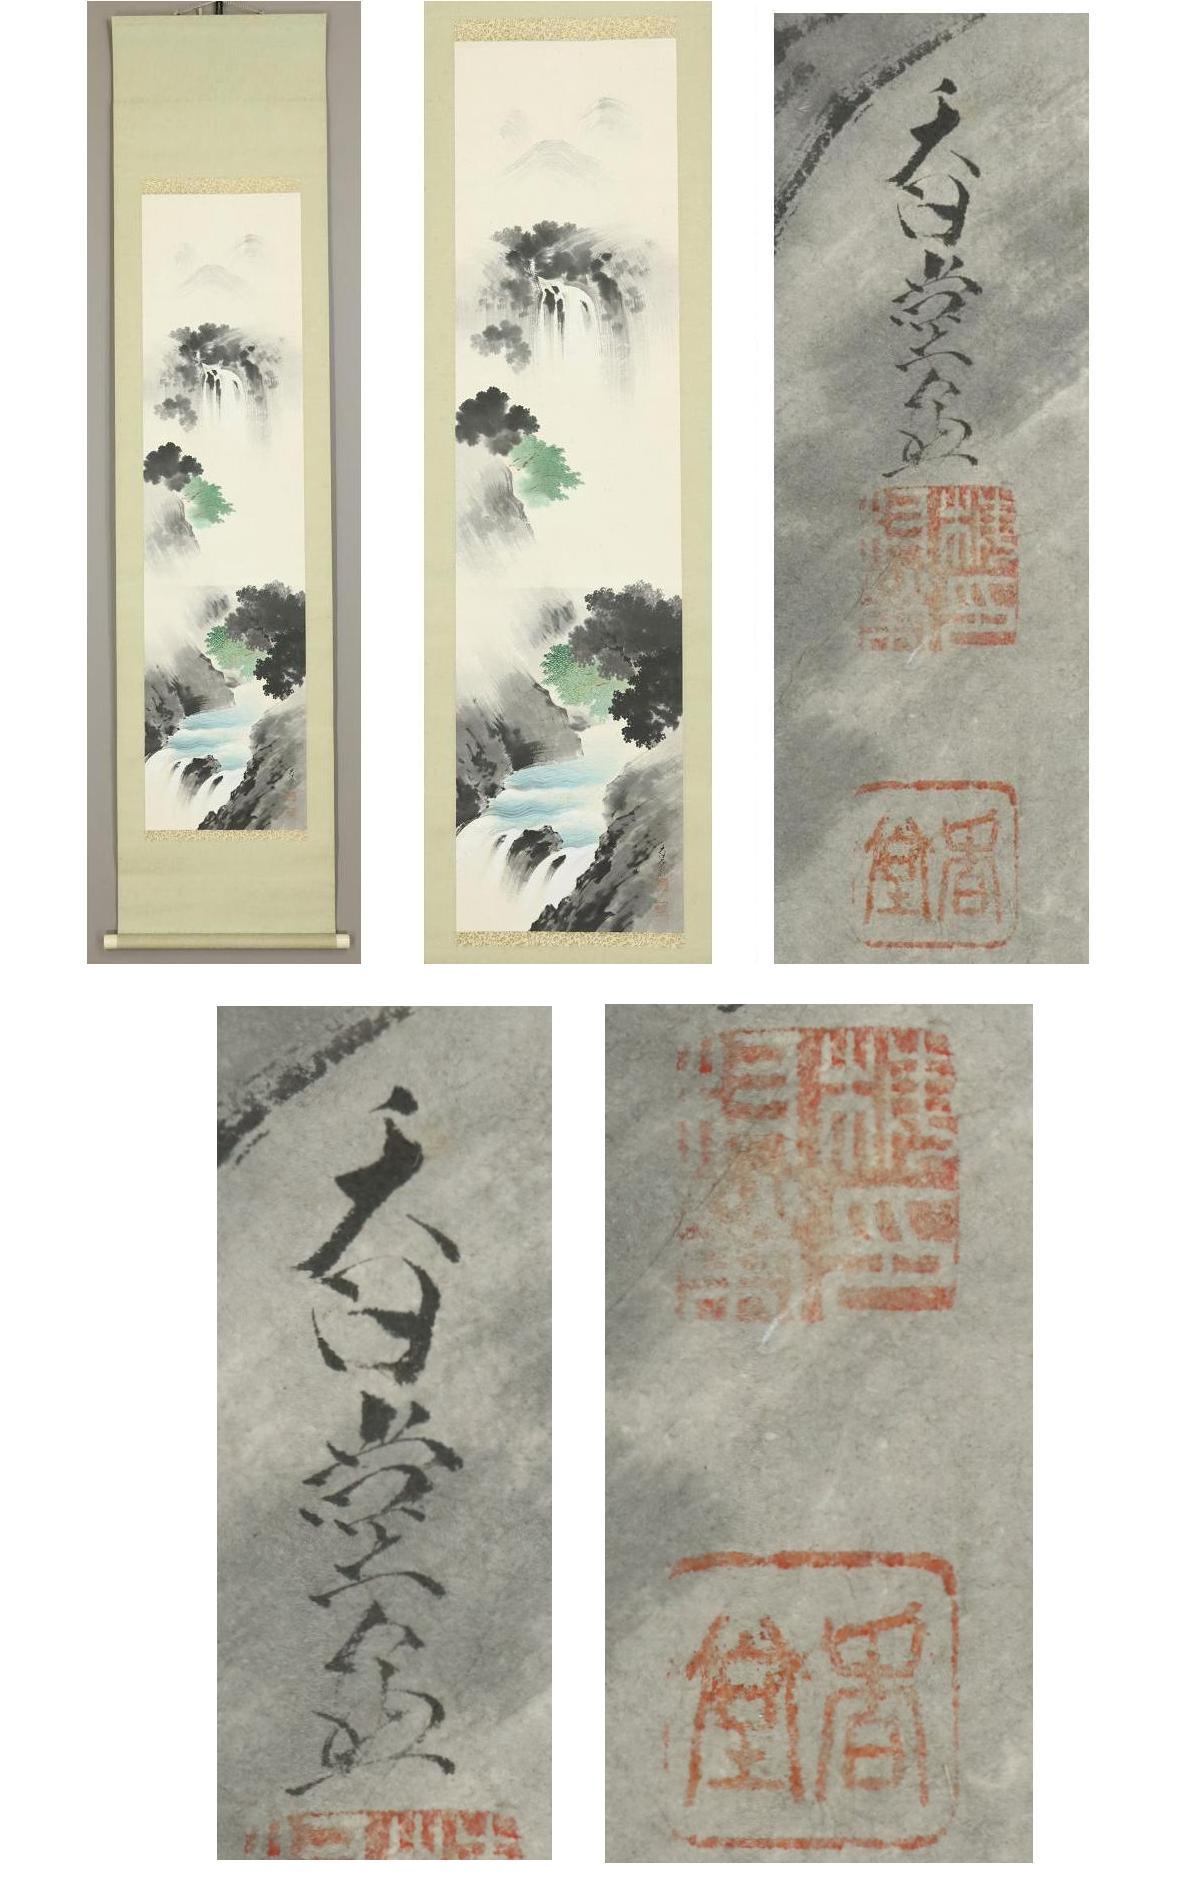 [◆ Kodo Umemura ◆ Diagramme de Kiyoshi Miyama ◆ Maître : Yoshifumi Kikuchi ◆ Co-box ◆ Peint à la main ◆ Papier ◆ Rouleau suspendu ◆

Kodo Umemura Né à Osaka en 1898

Il est diplômé de l'école de peinture de la ville de Kyoto.
Il a étudié avec